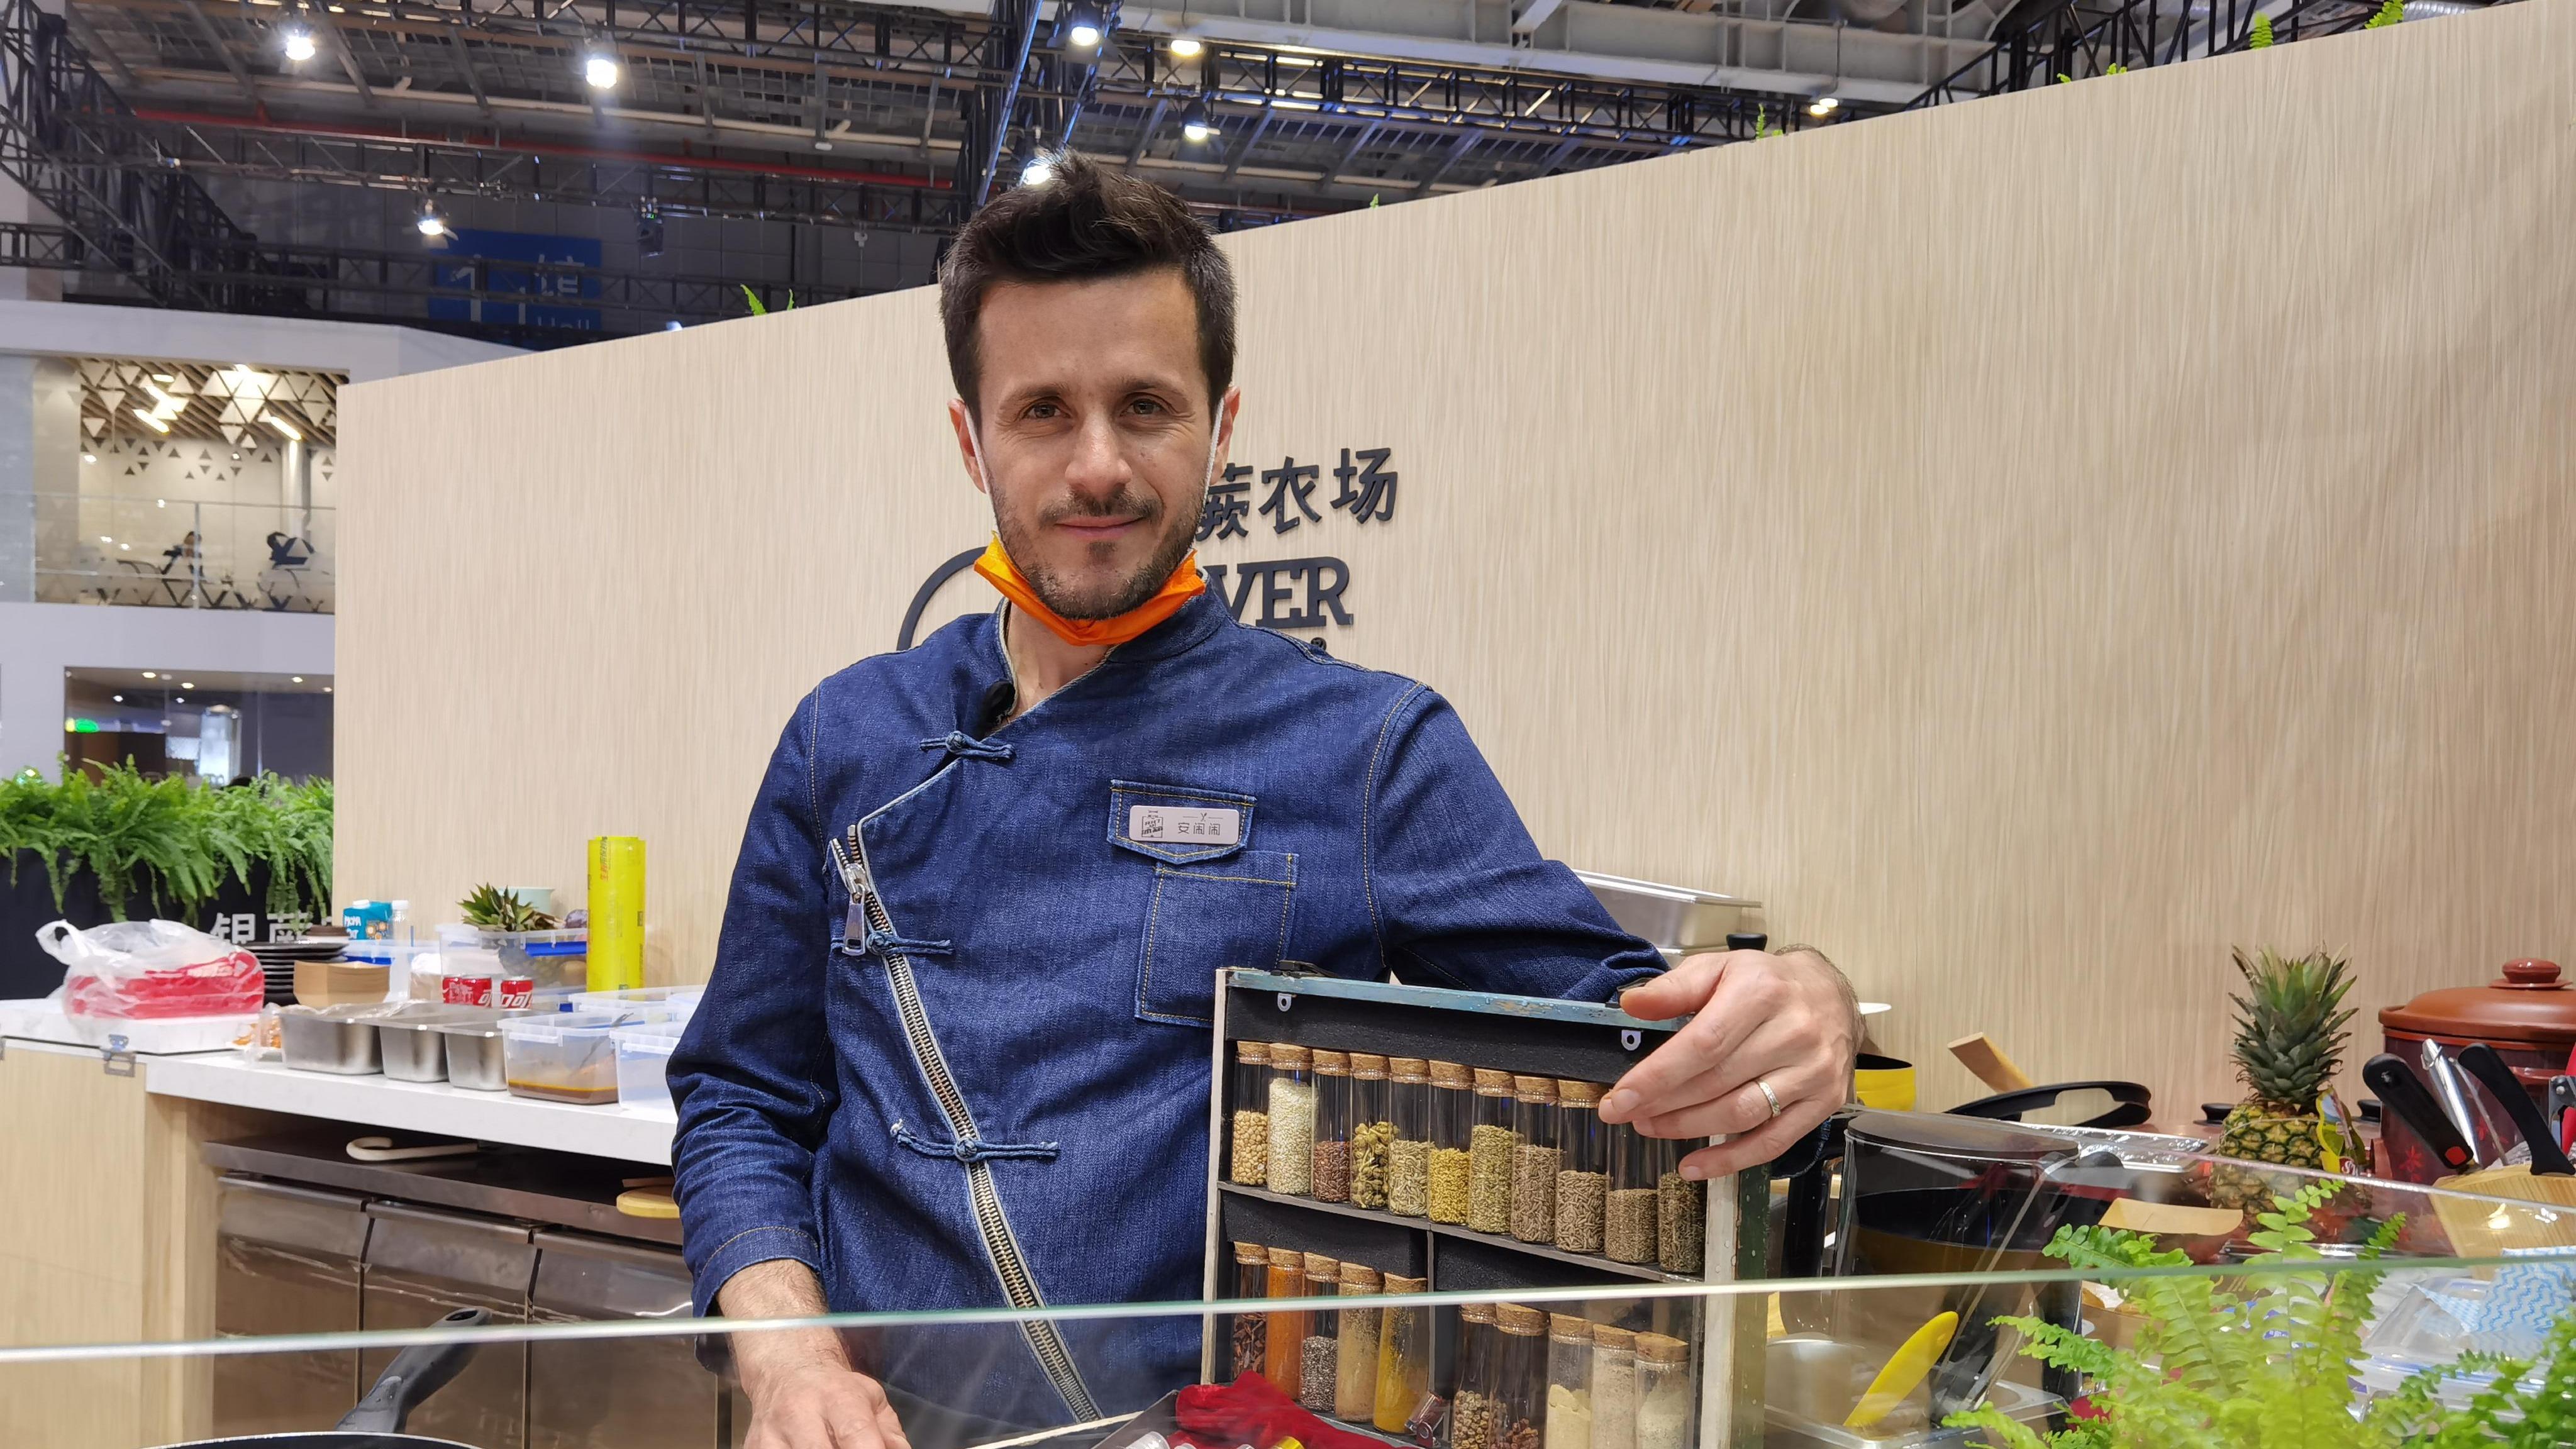 Францын тогооч Ань Нао Нао ба түүний Хятадтай үүссэн романтик хувь барилдлага